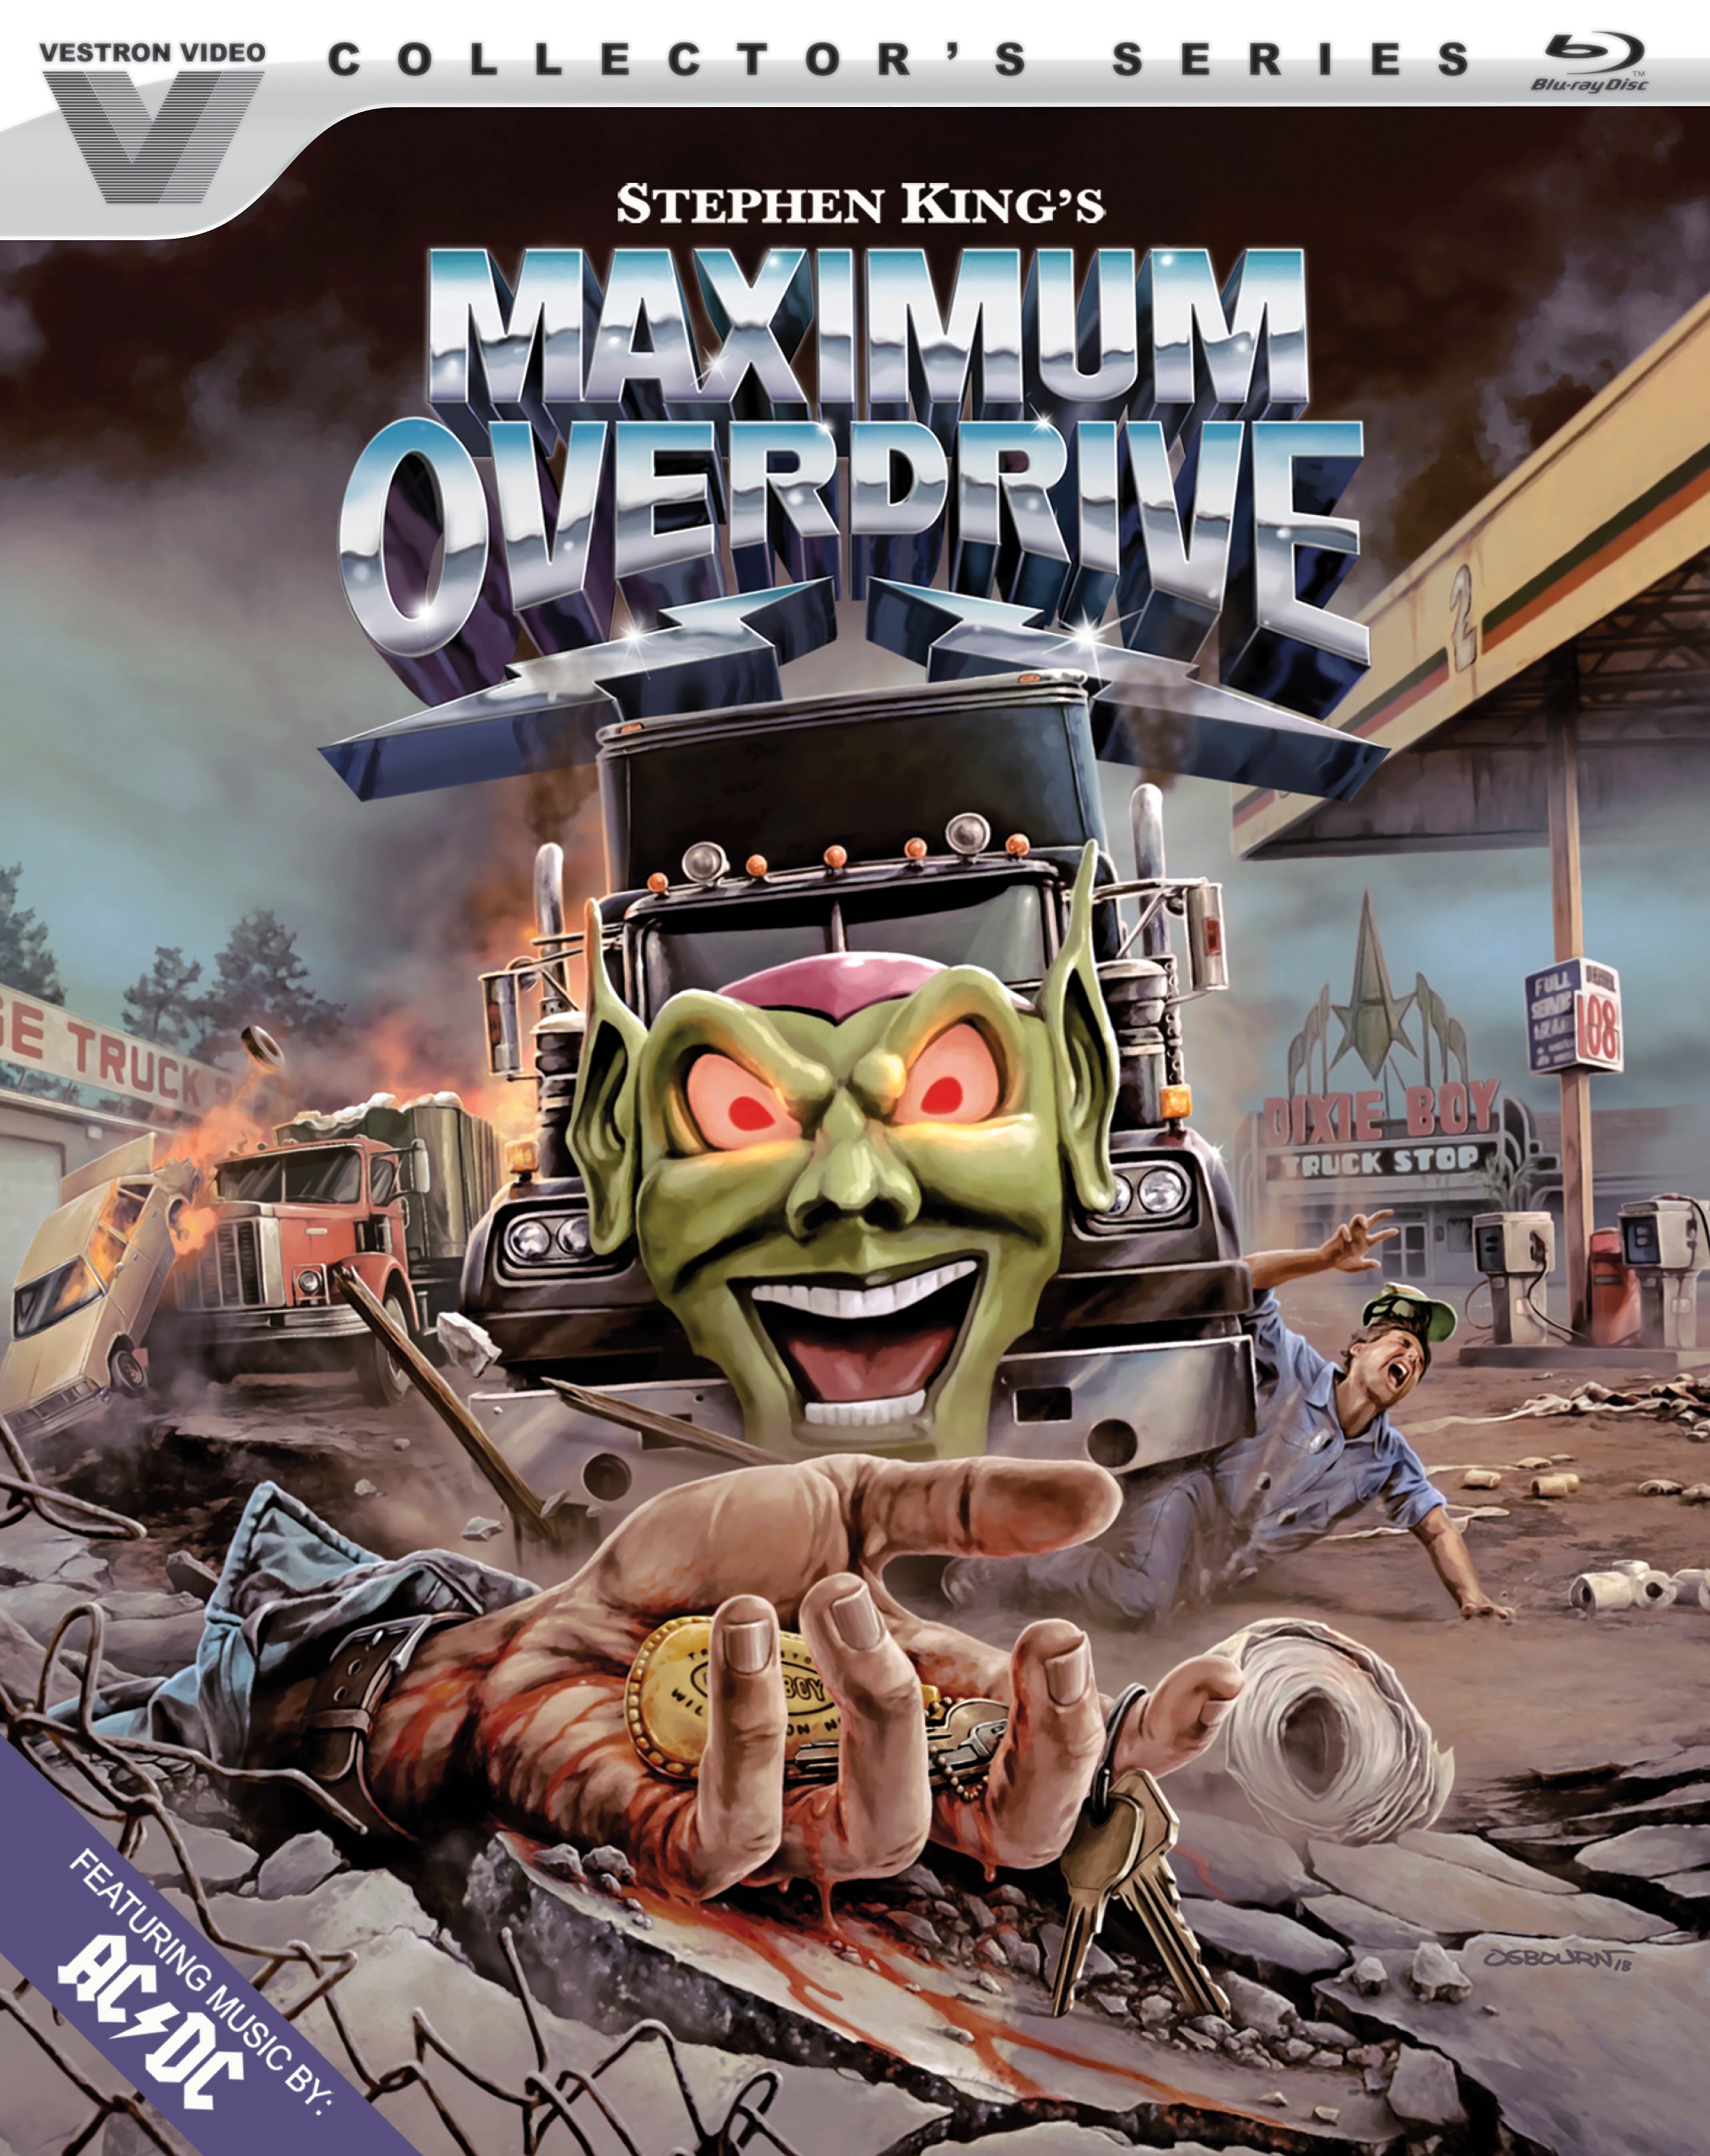 Maximum Overdrive [Blu-ray] [1986] - Best Buy